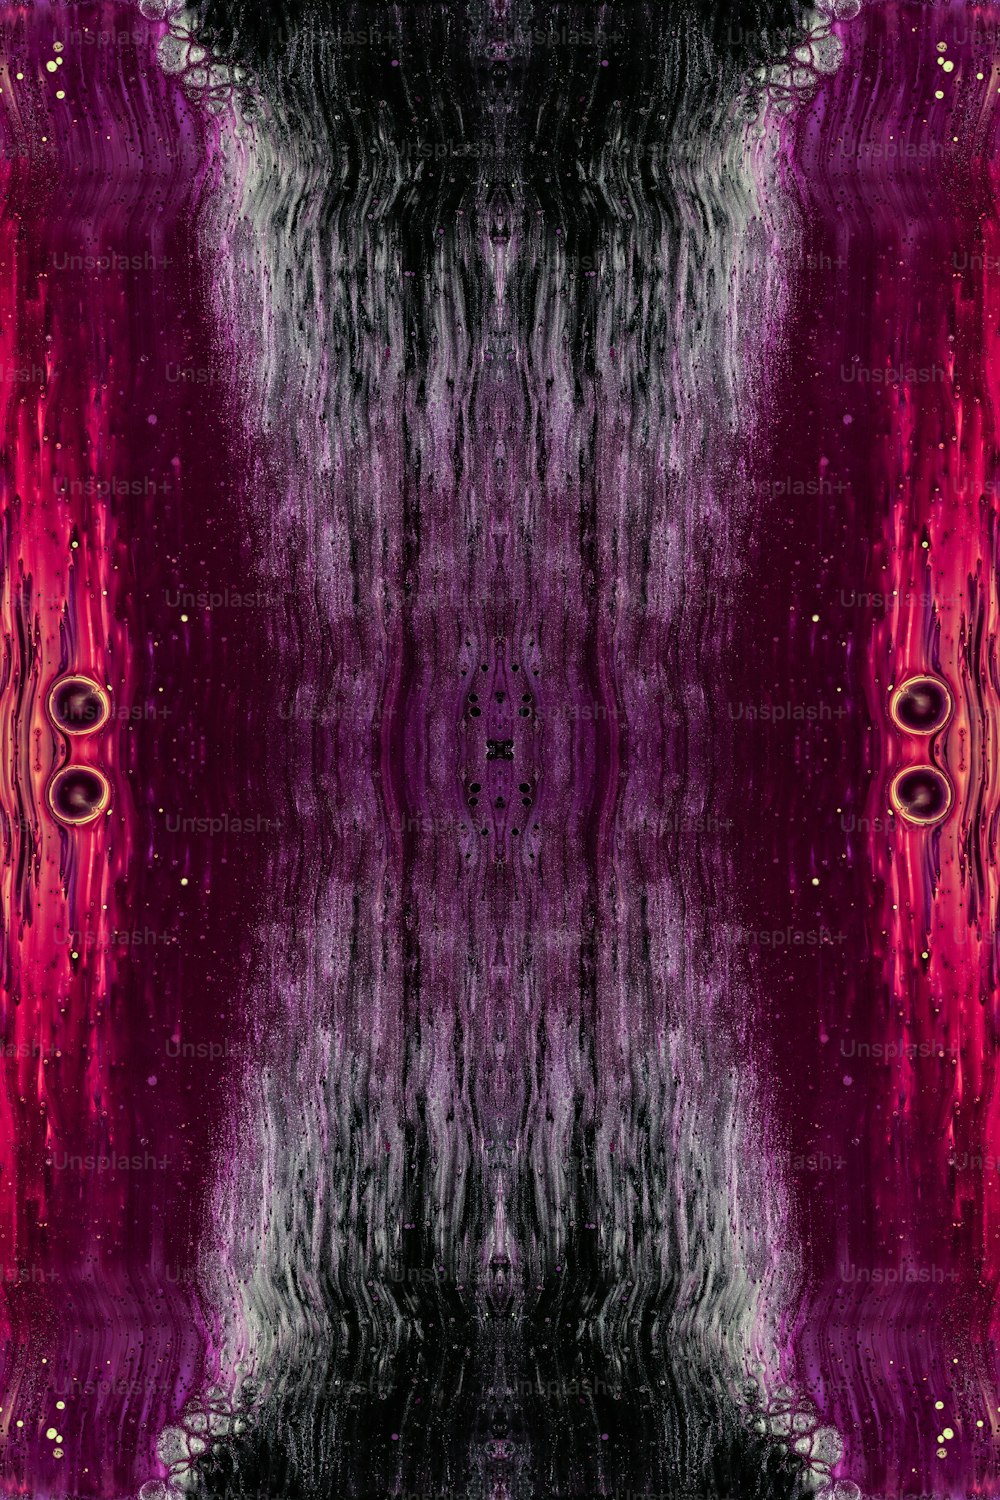 Un'immagine astratta di uno sfondo viola e nero